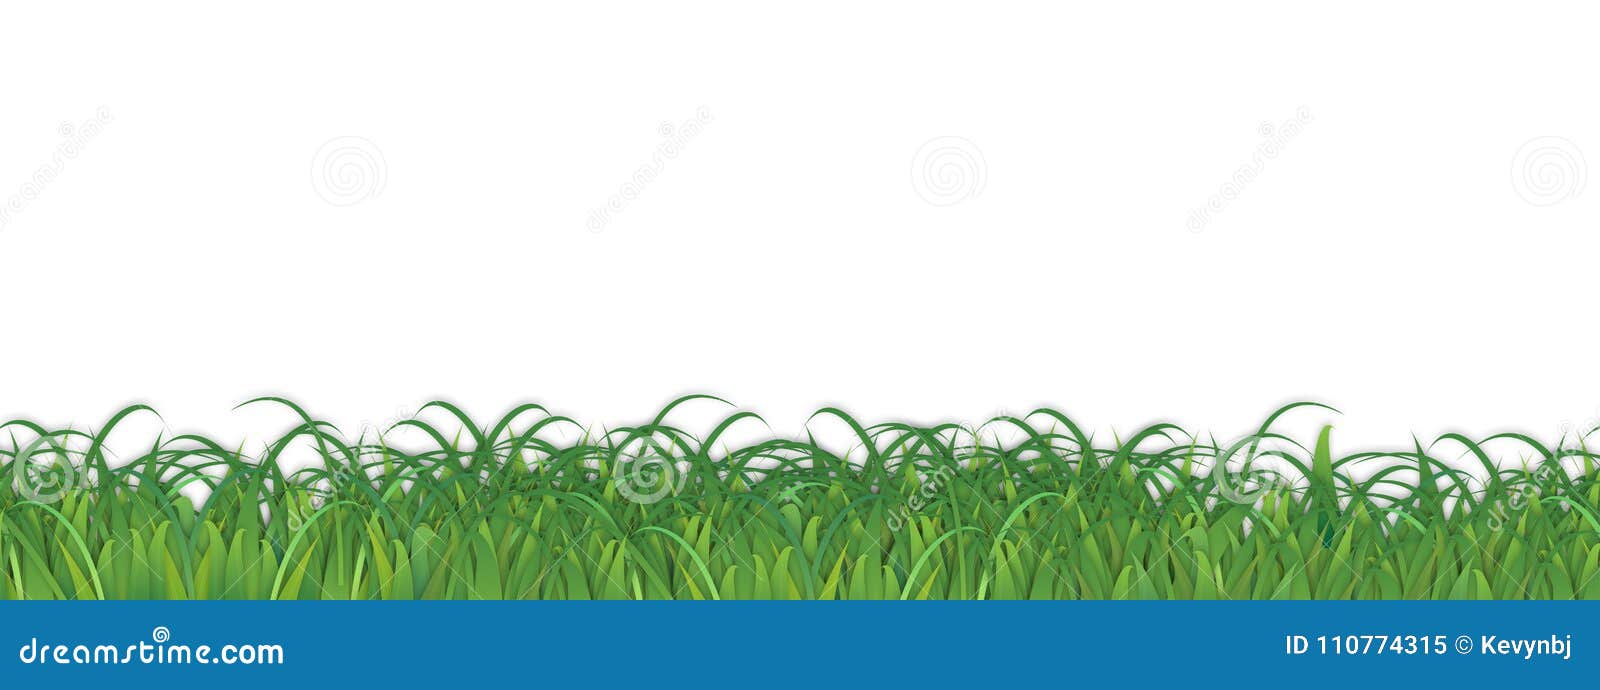 grass background weeds 